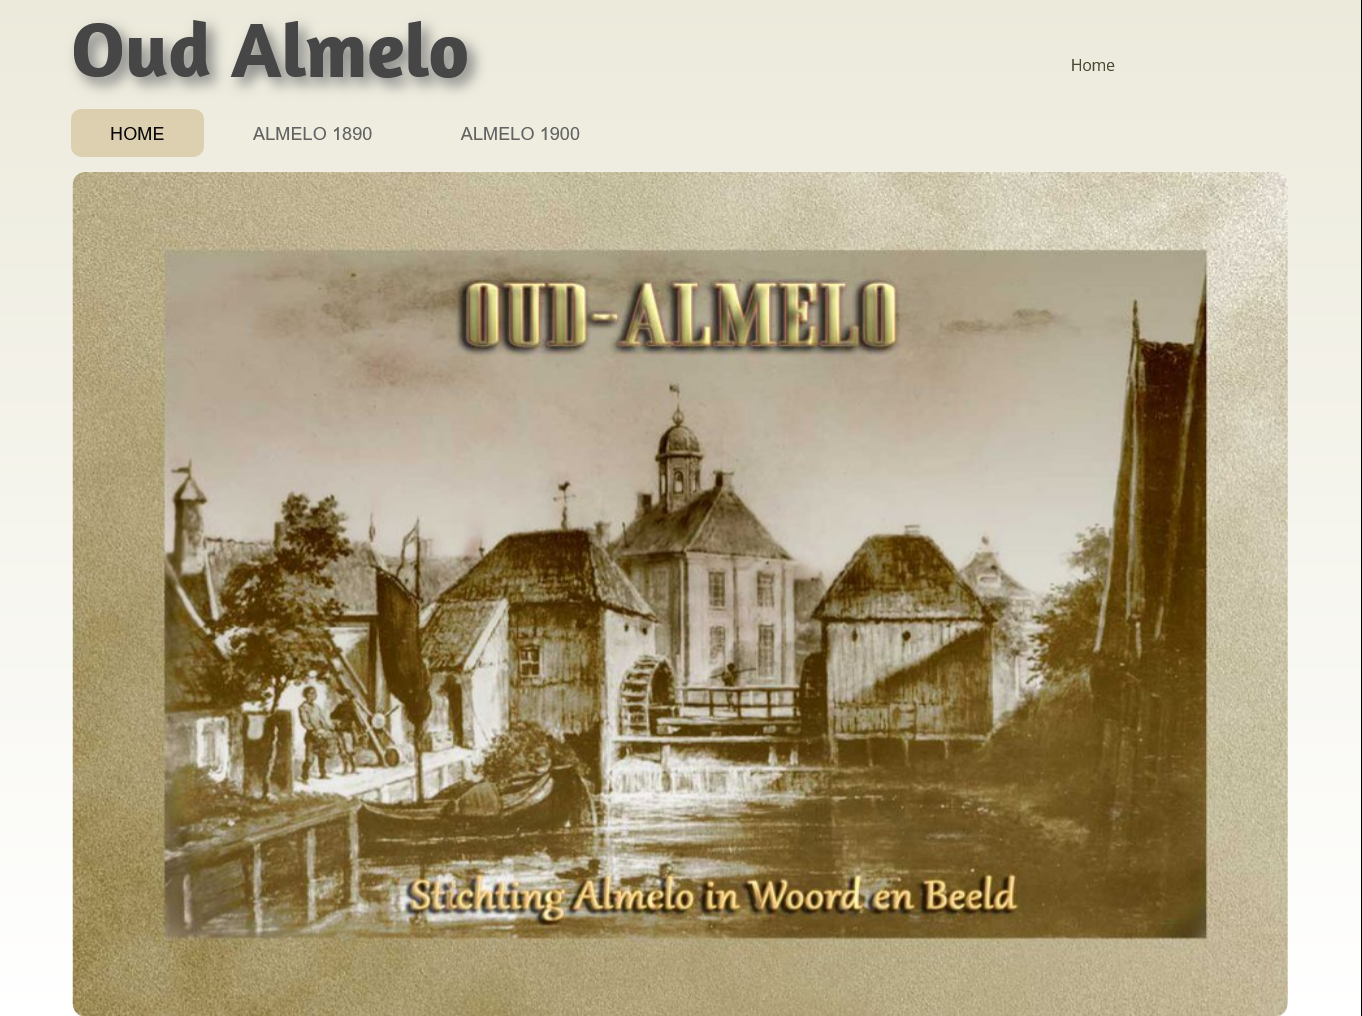 Home - Oud Almelo